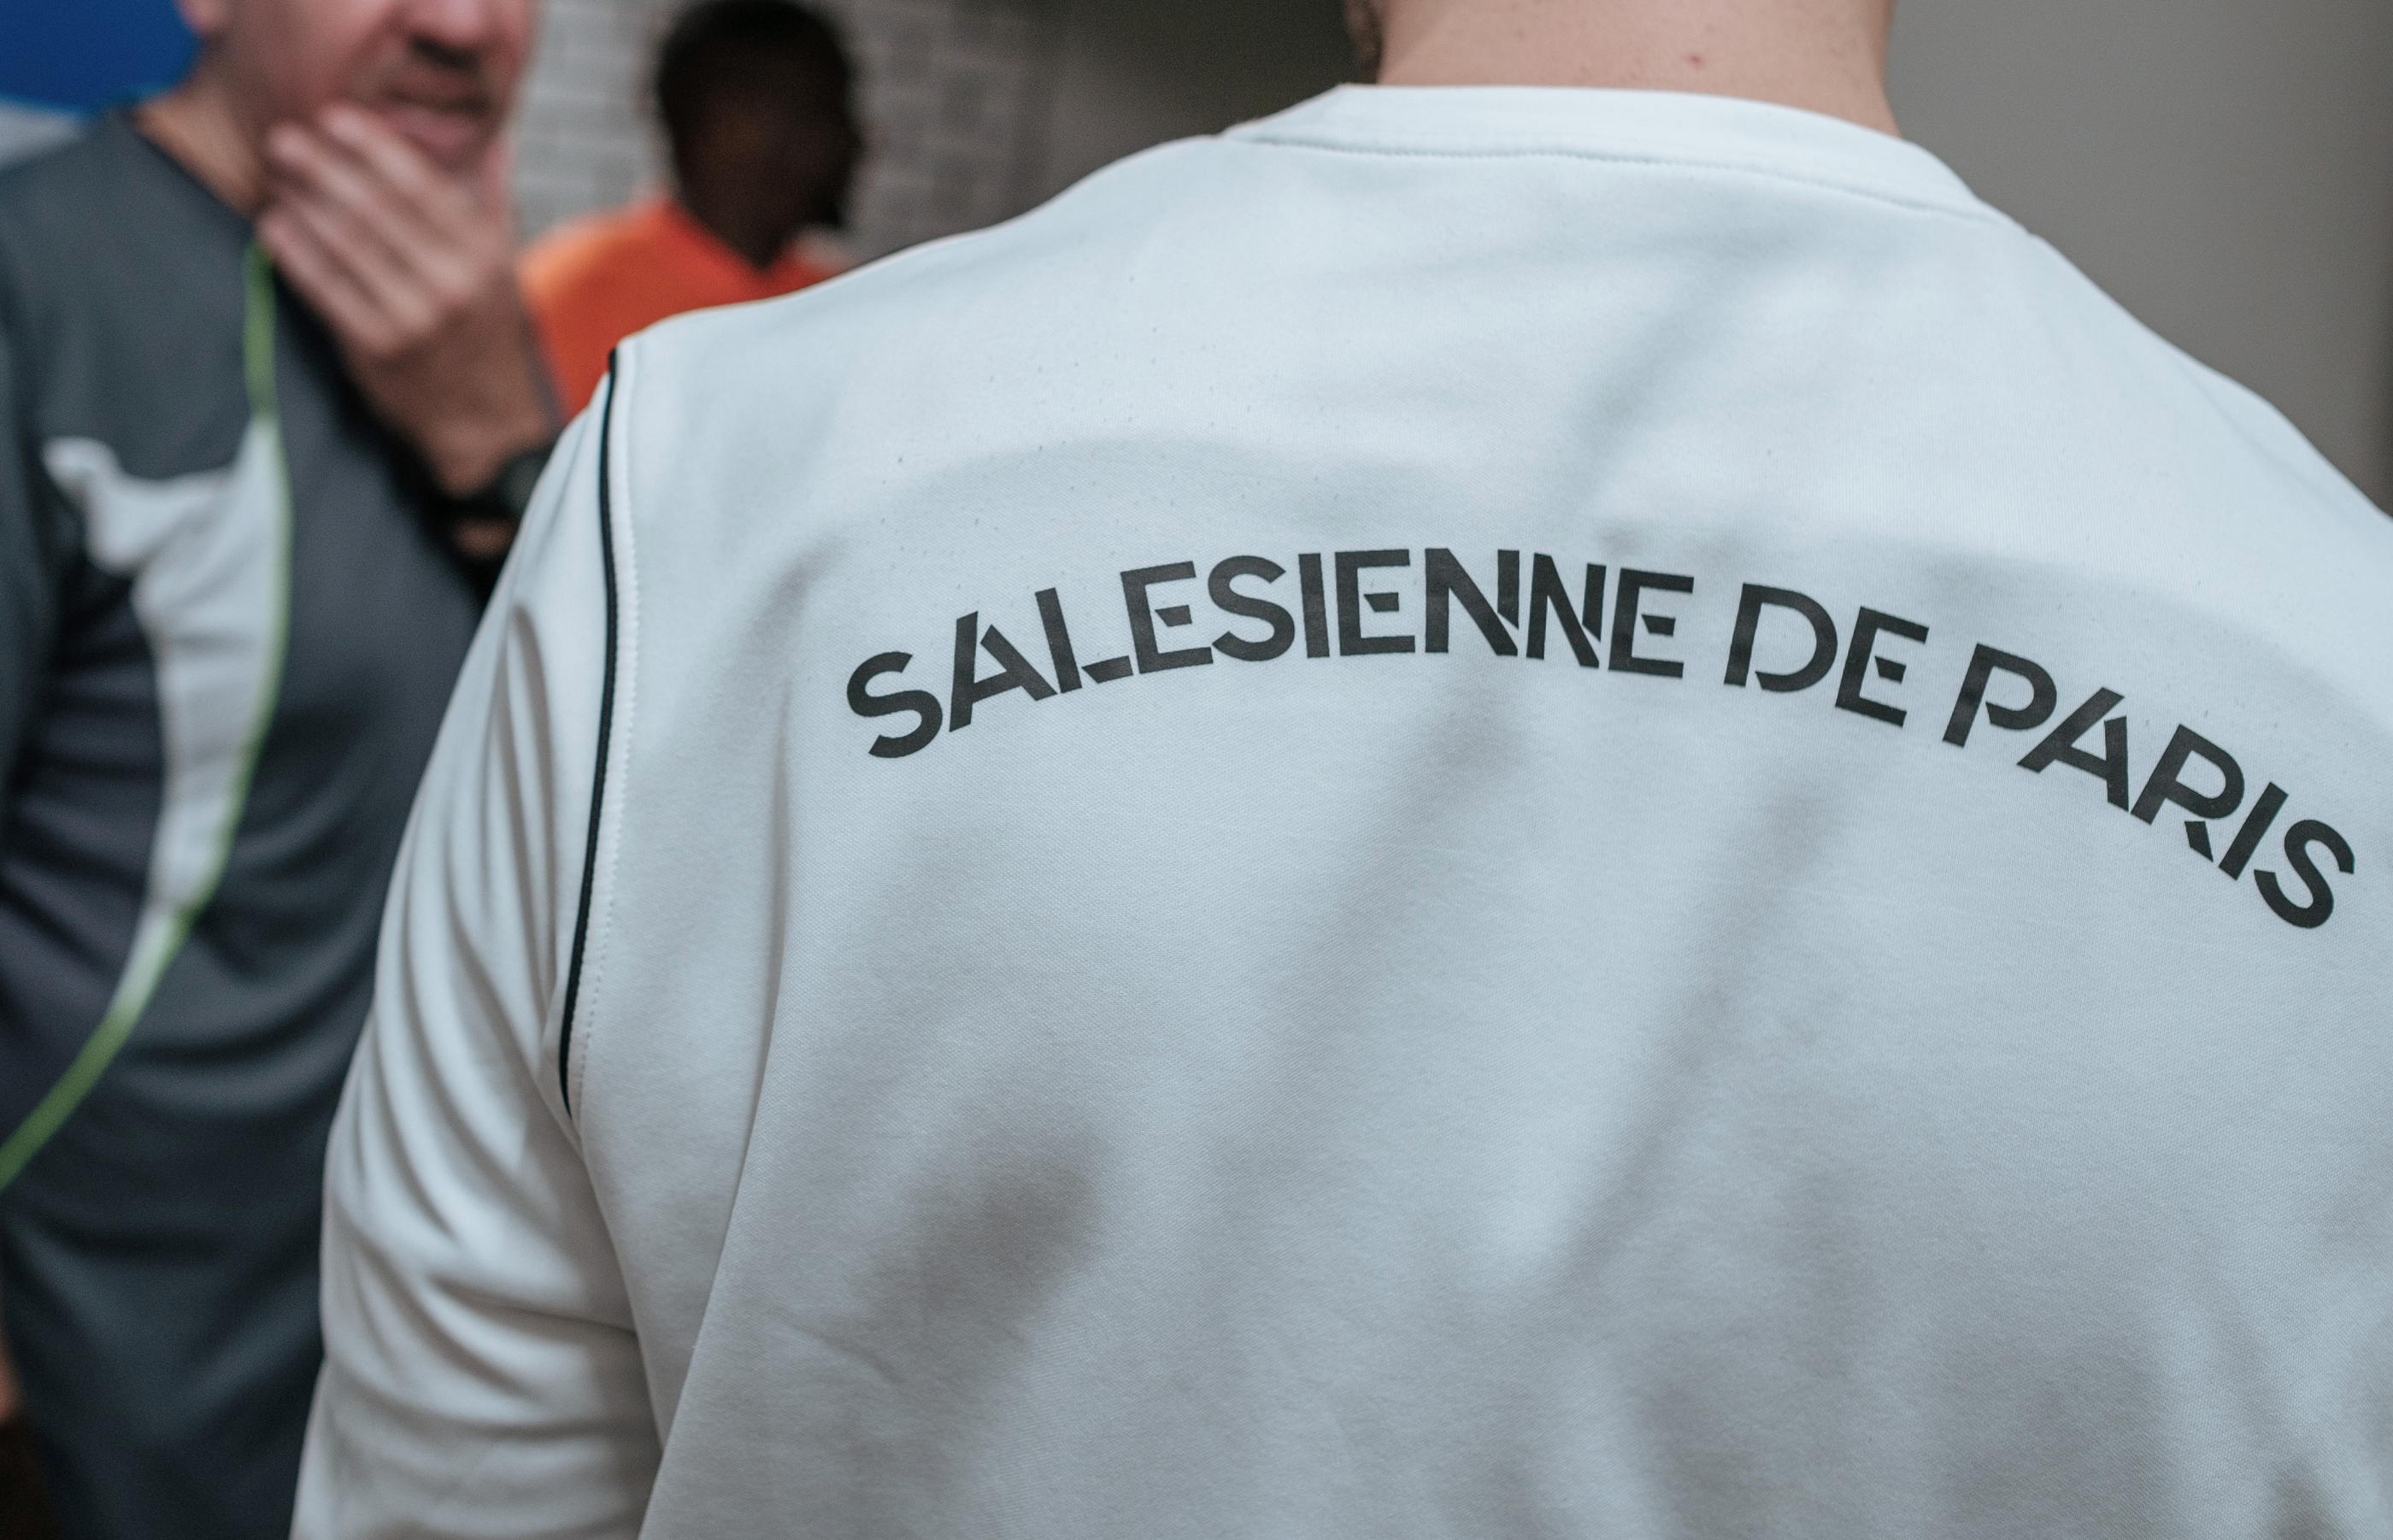 La section foot du club de la Salésienne, qui compte plus de 1 000 licenciés, est dans le viseur des pouvoirs publics. Jérémy Piot